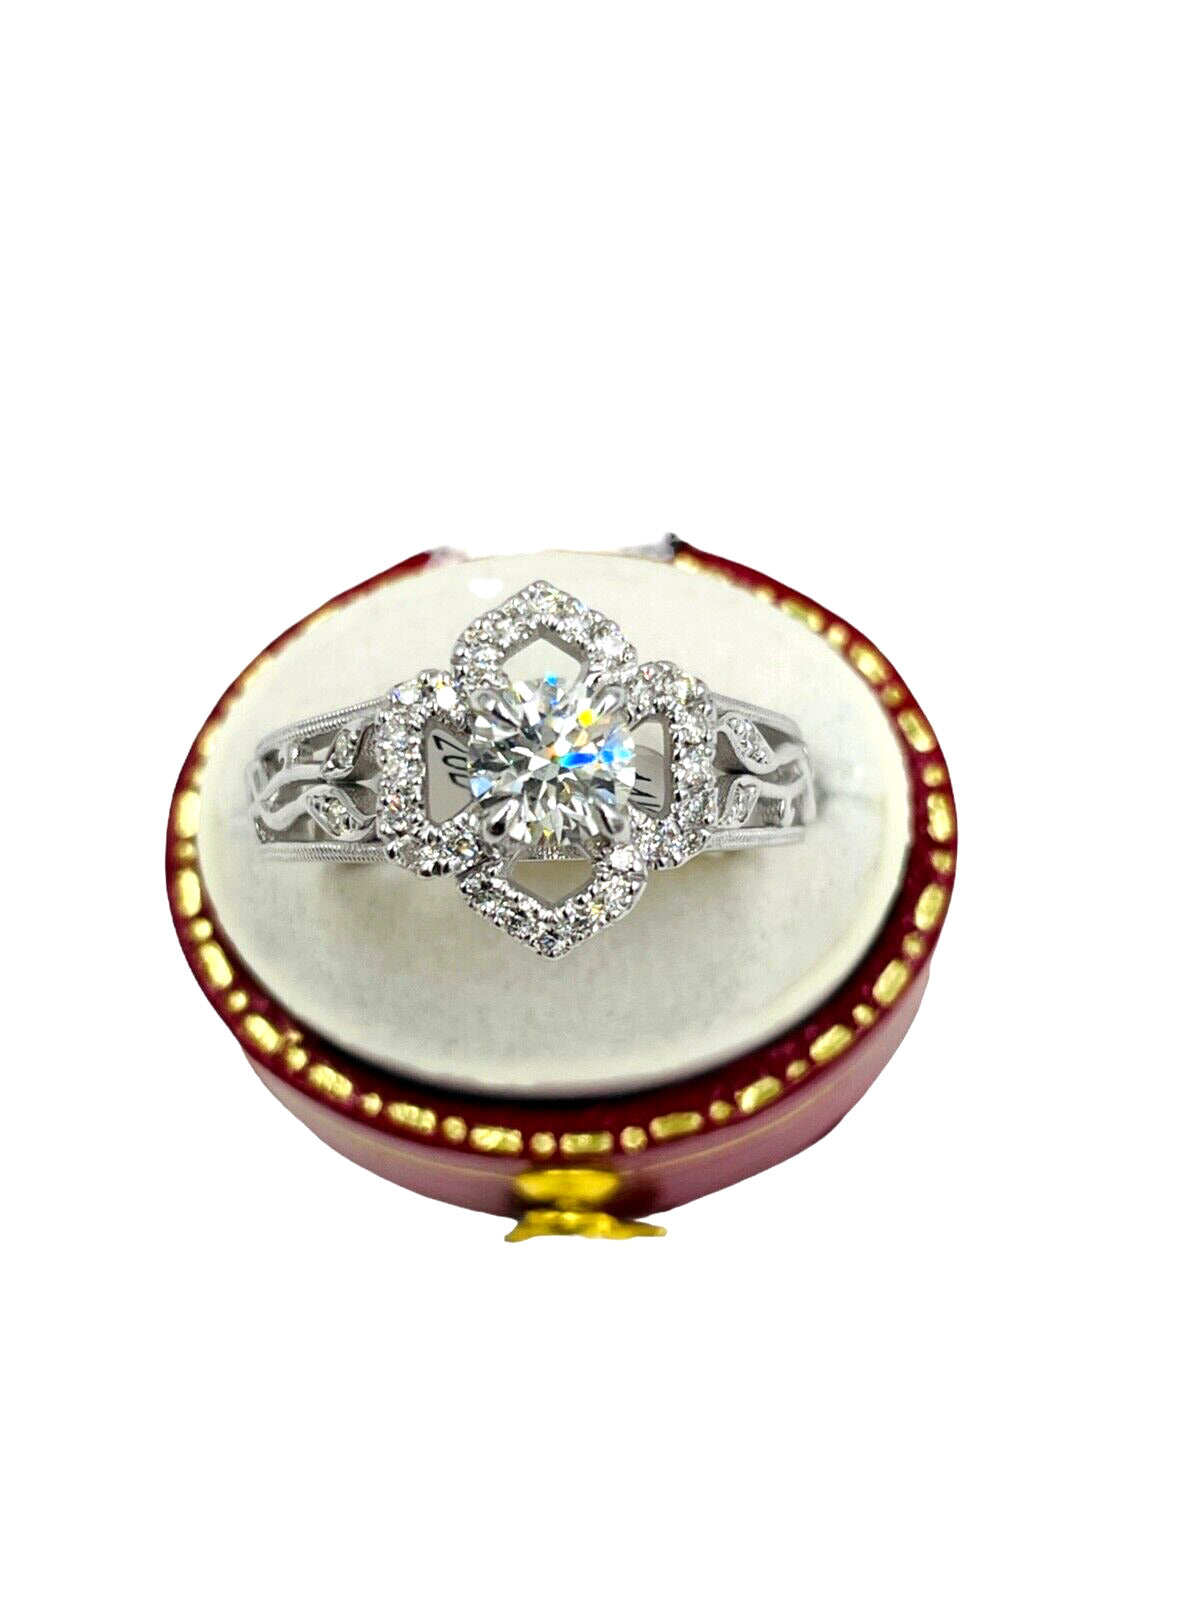 14kwg Diamond Halo Flower Ring EGL Certified